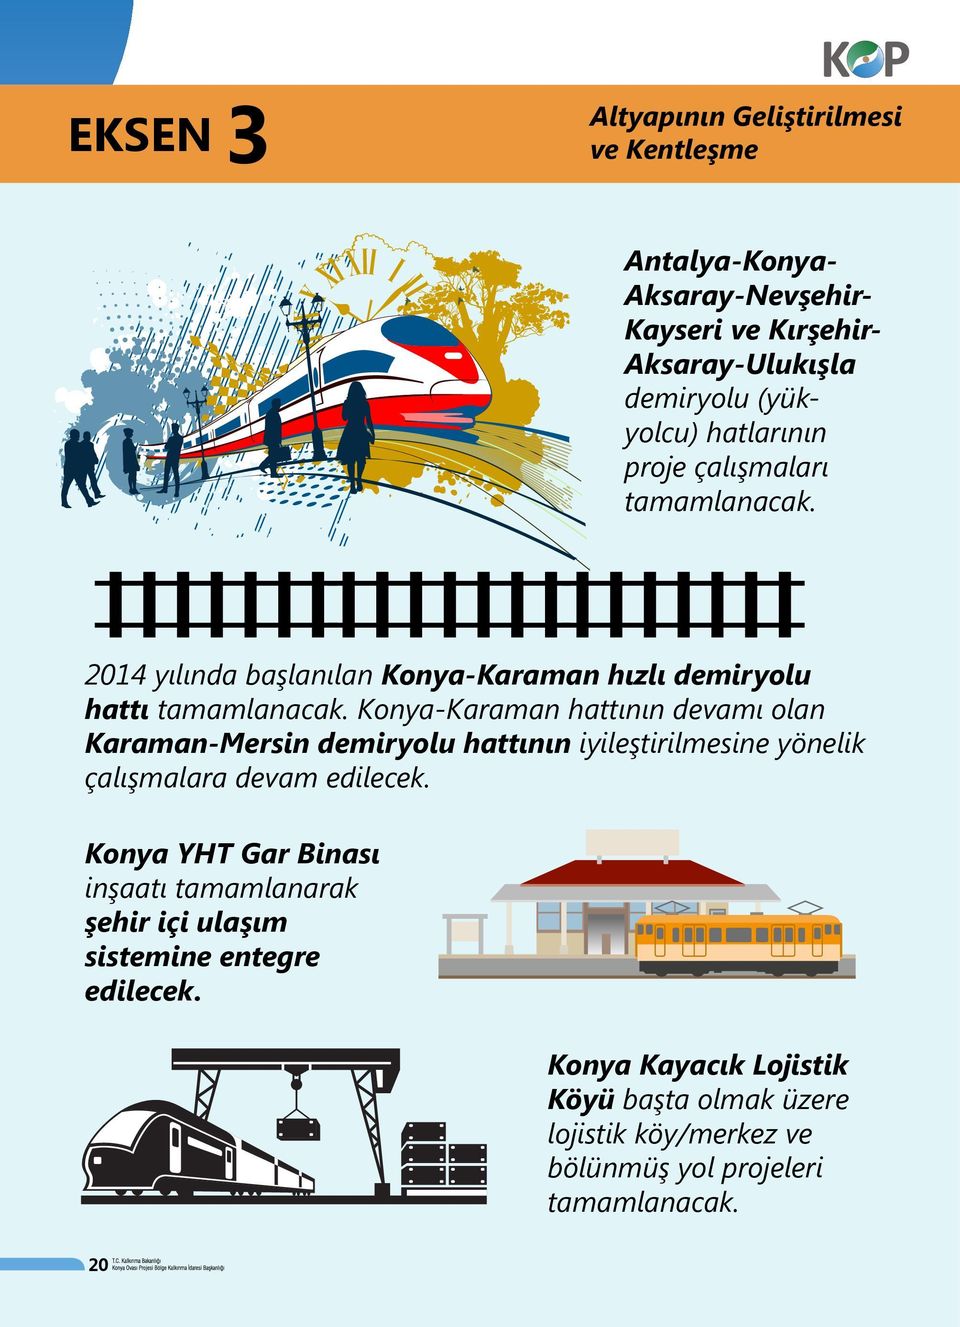 Konya-Karaman hattının devamı olan Karaman-Mersin demiryolu hattının iyileştirilmesine yönelik çalışmalara devam edilecek.